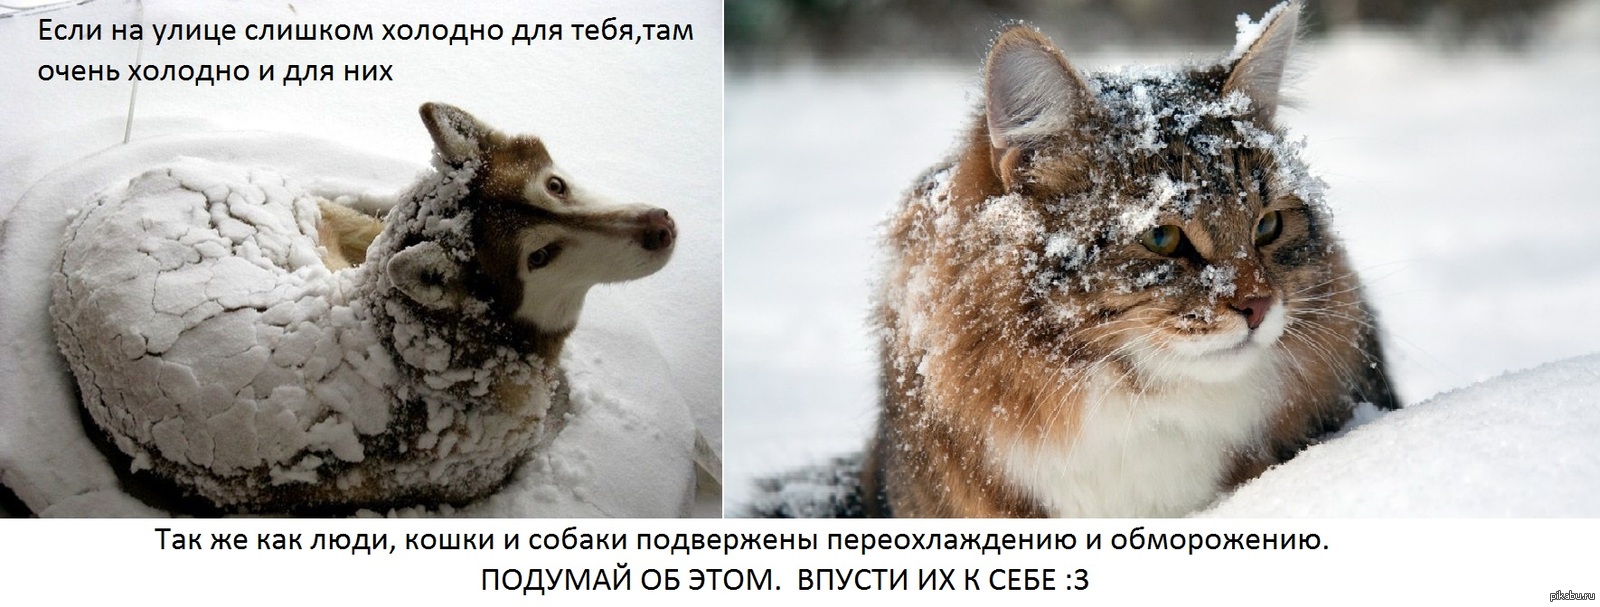 Почему мерзнут лапы. Бездомные животные зима. Замерзающие бездомные животные. Помогайте бездомным животным в Морозы. Бездомные животные мерзнут.